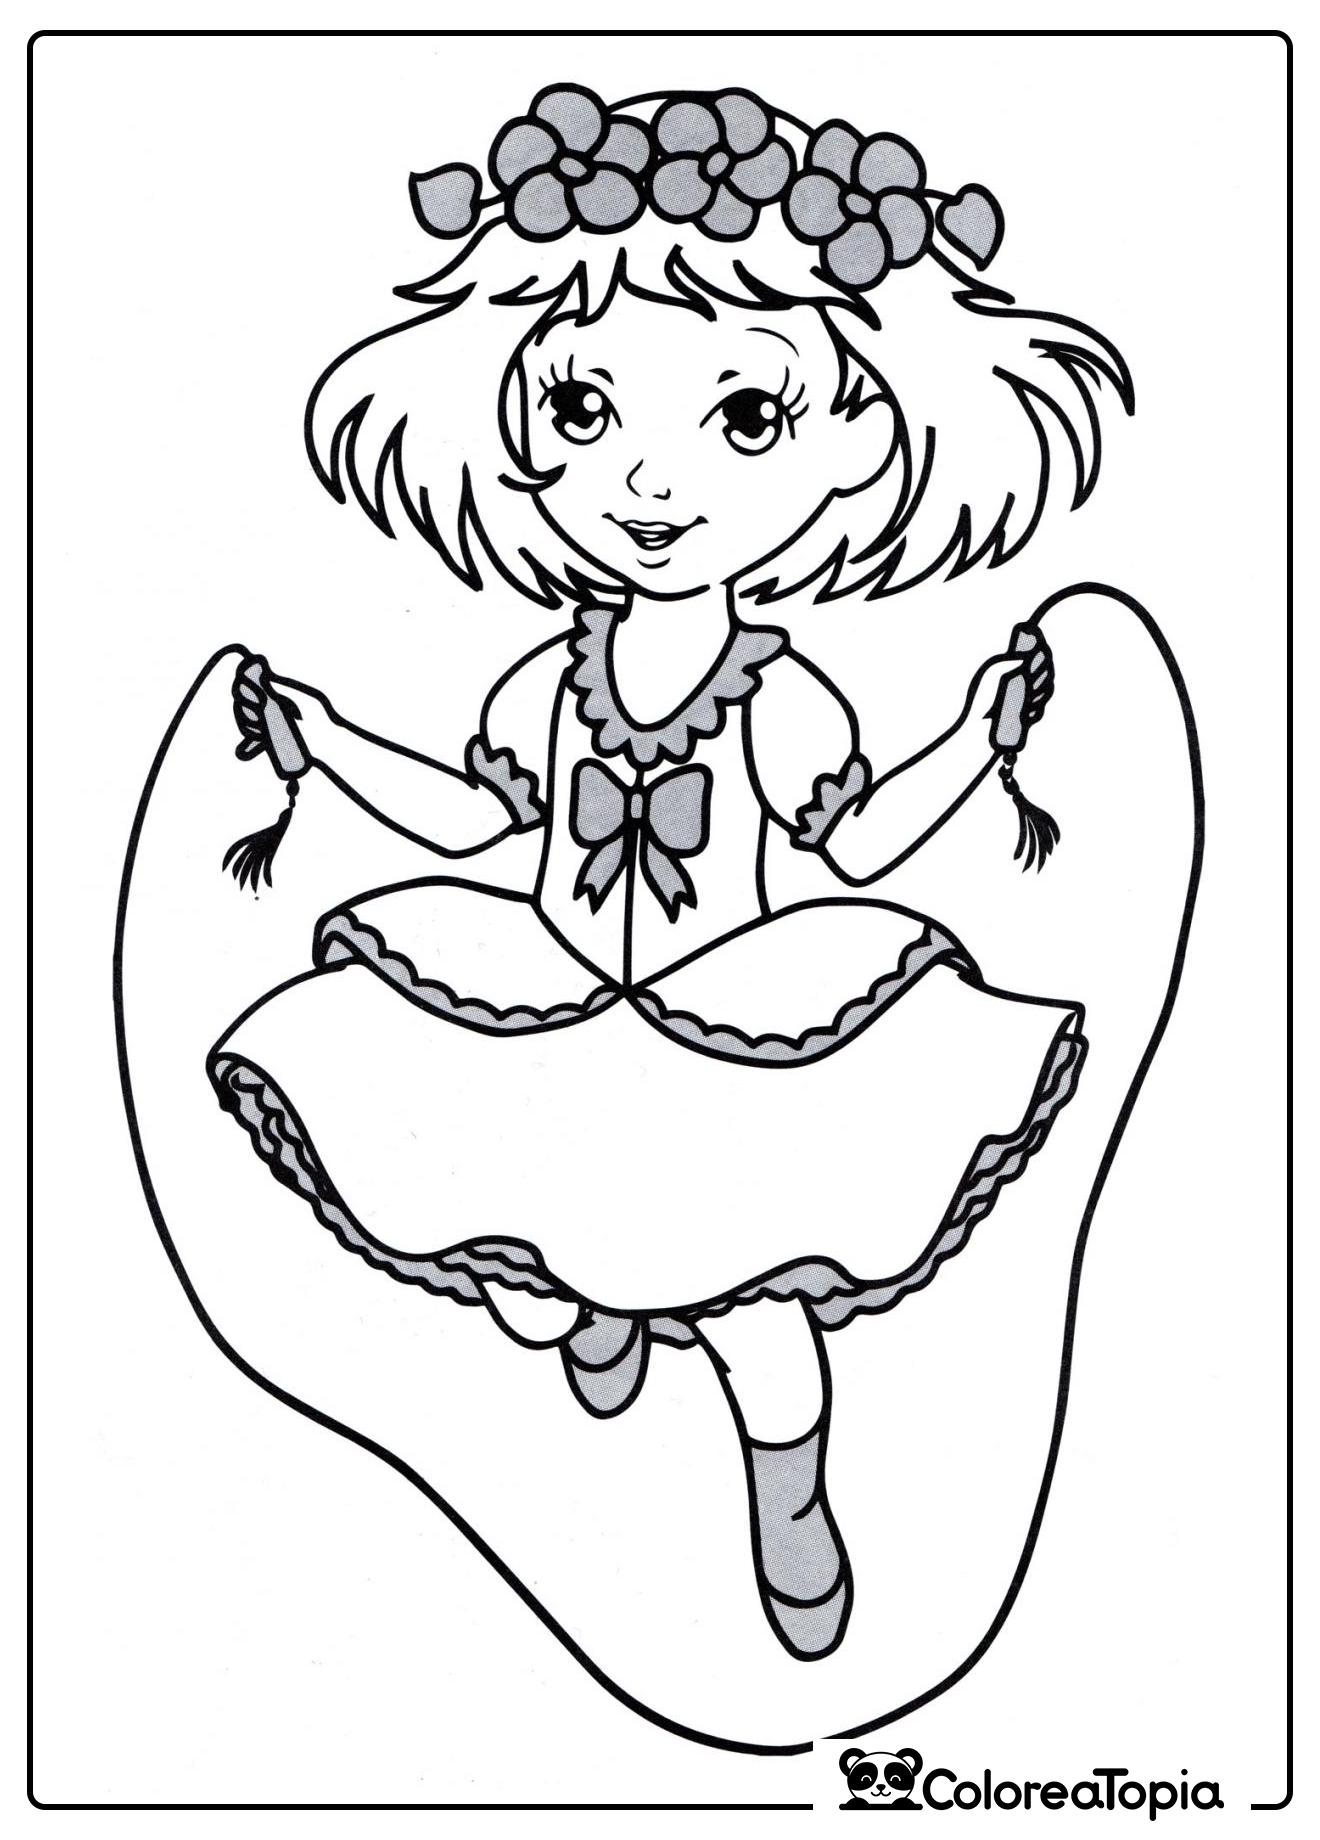 Princesa con cuerda de saltar - dibujo para colorear